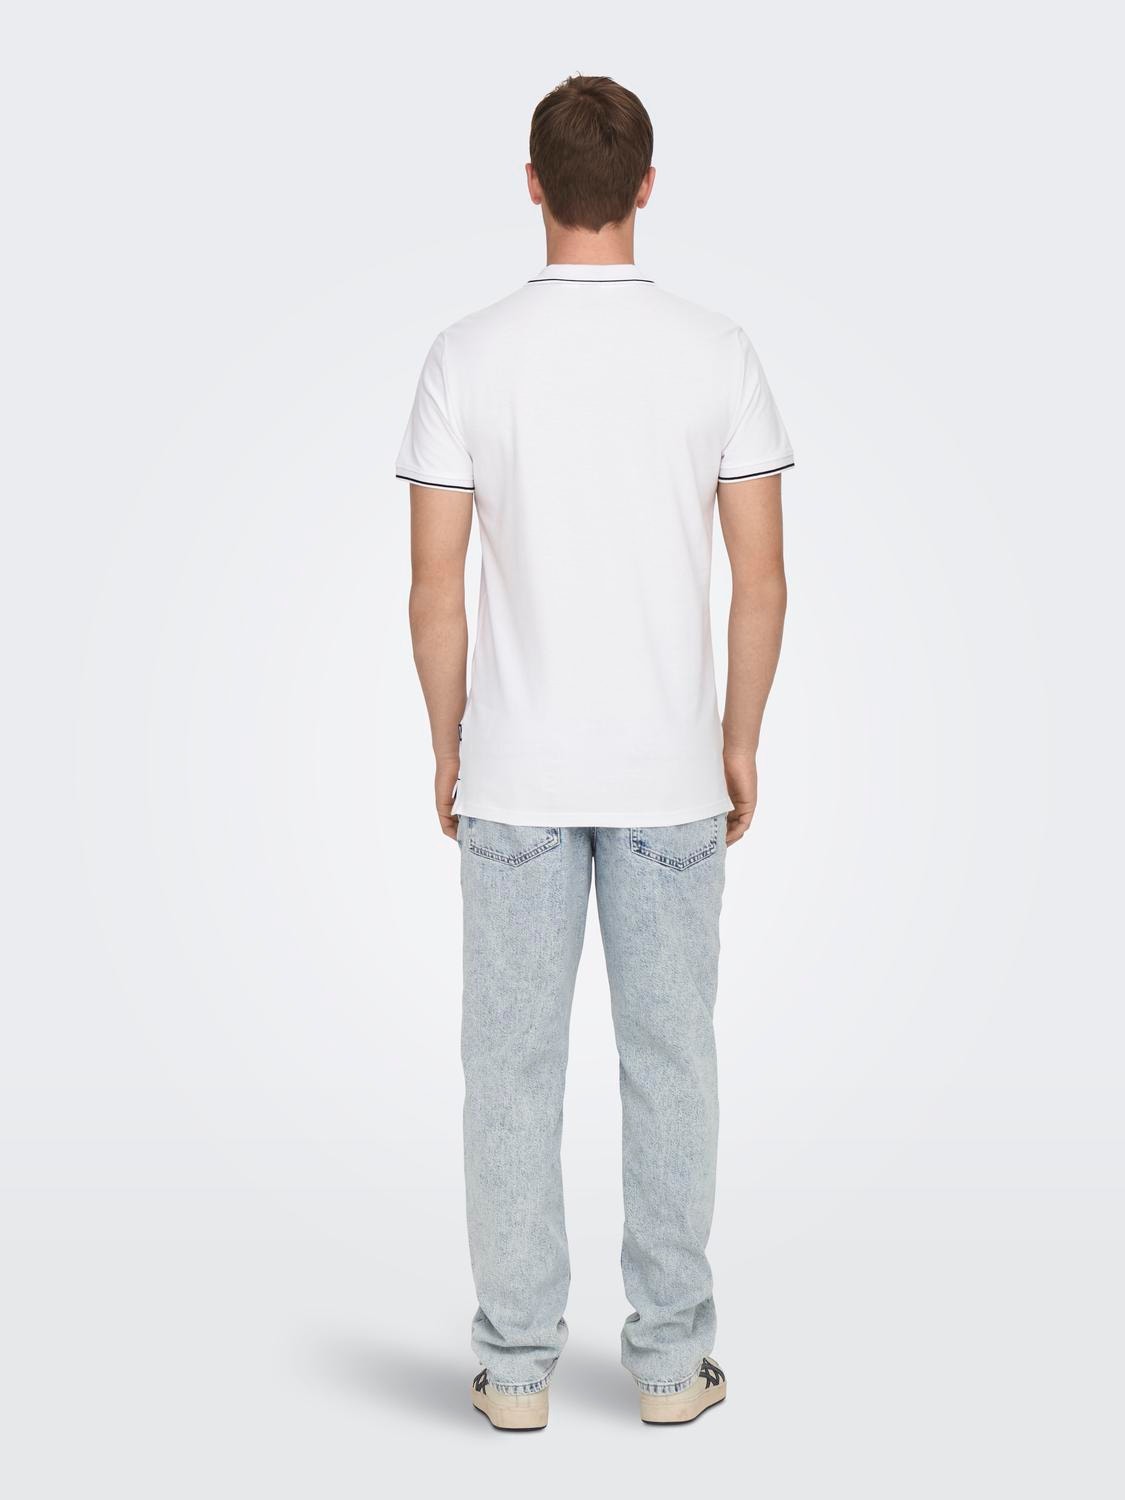 ONLY & SONS Normal geschnitten Polokragen Poloshirt -Bright White - 22024827